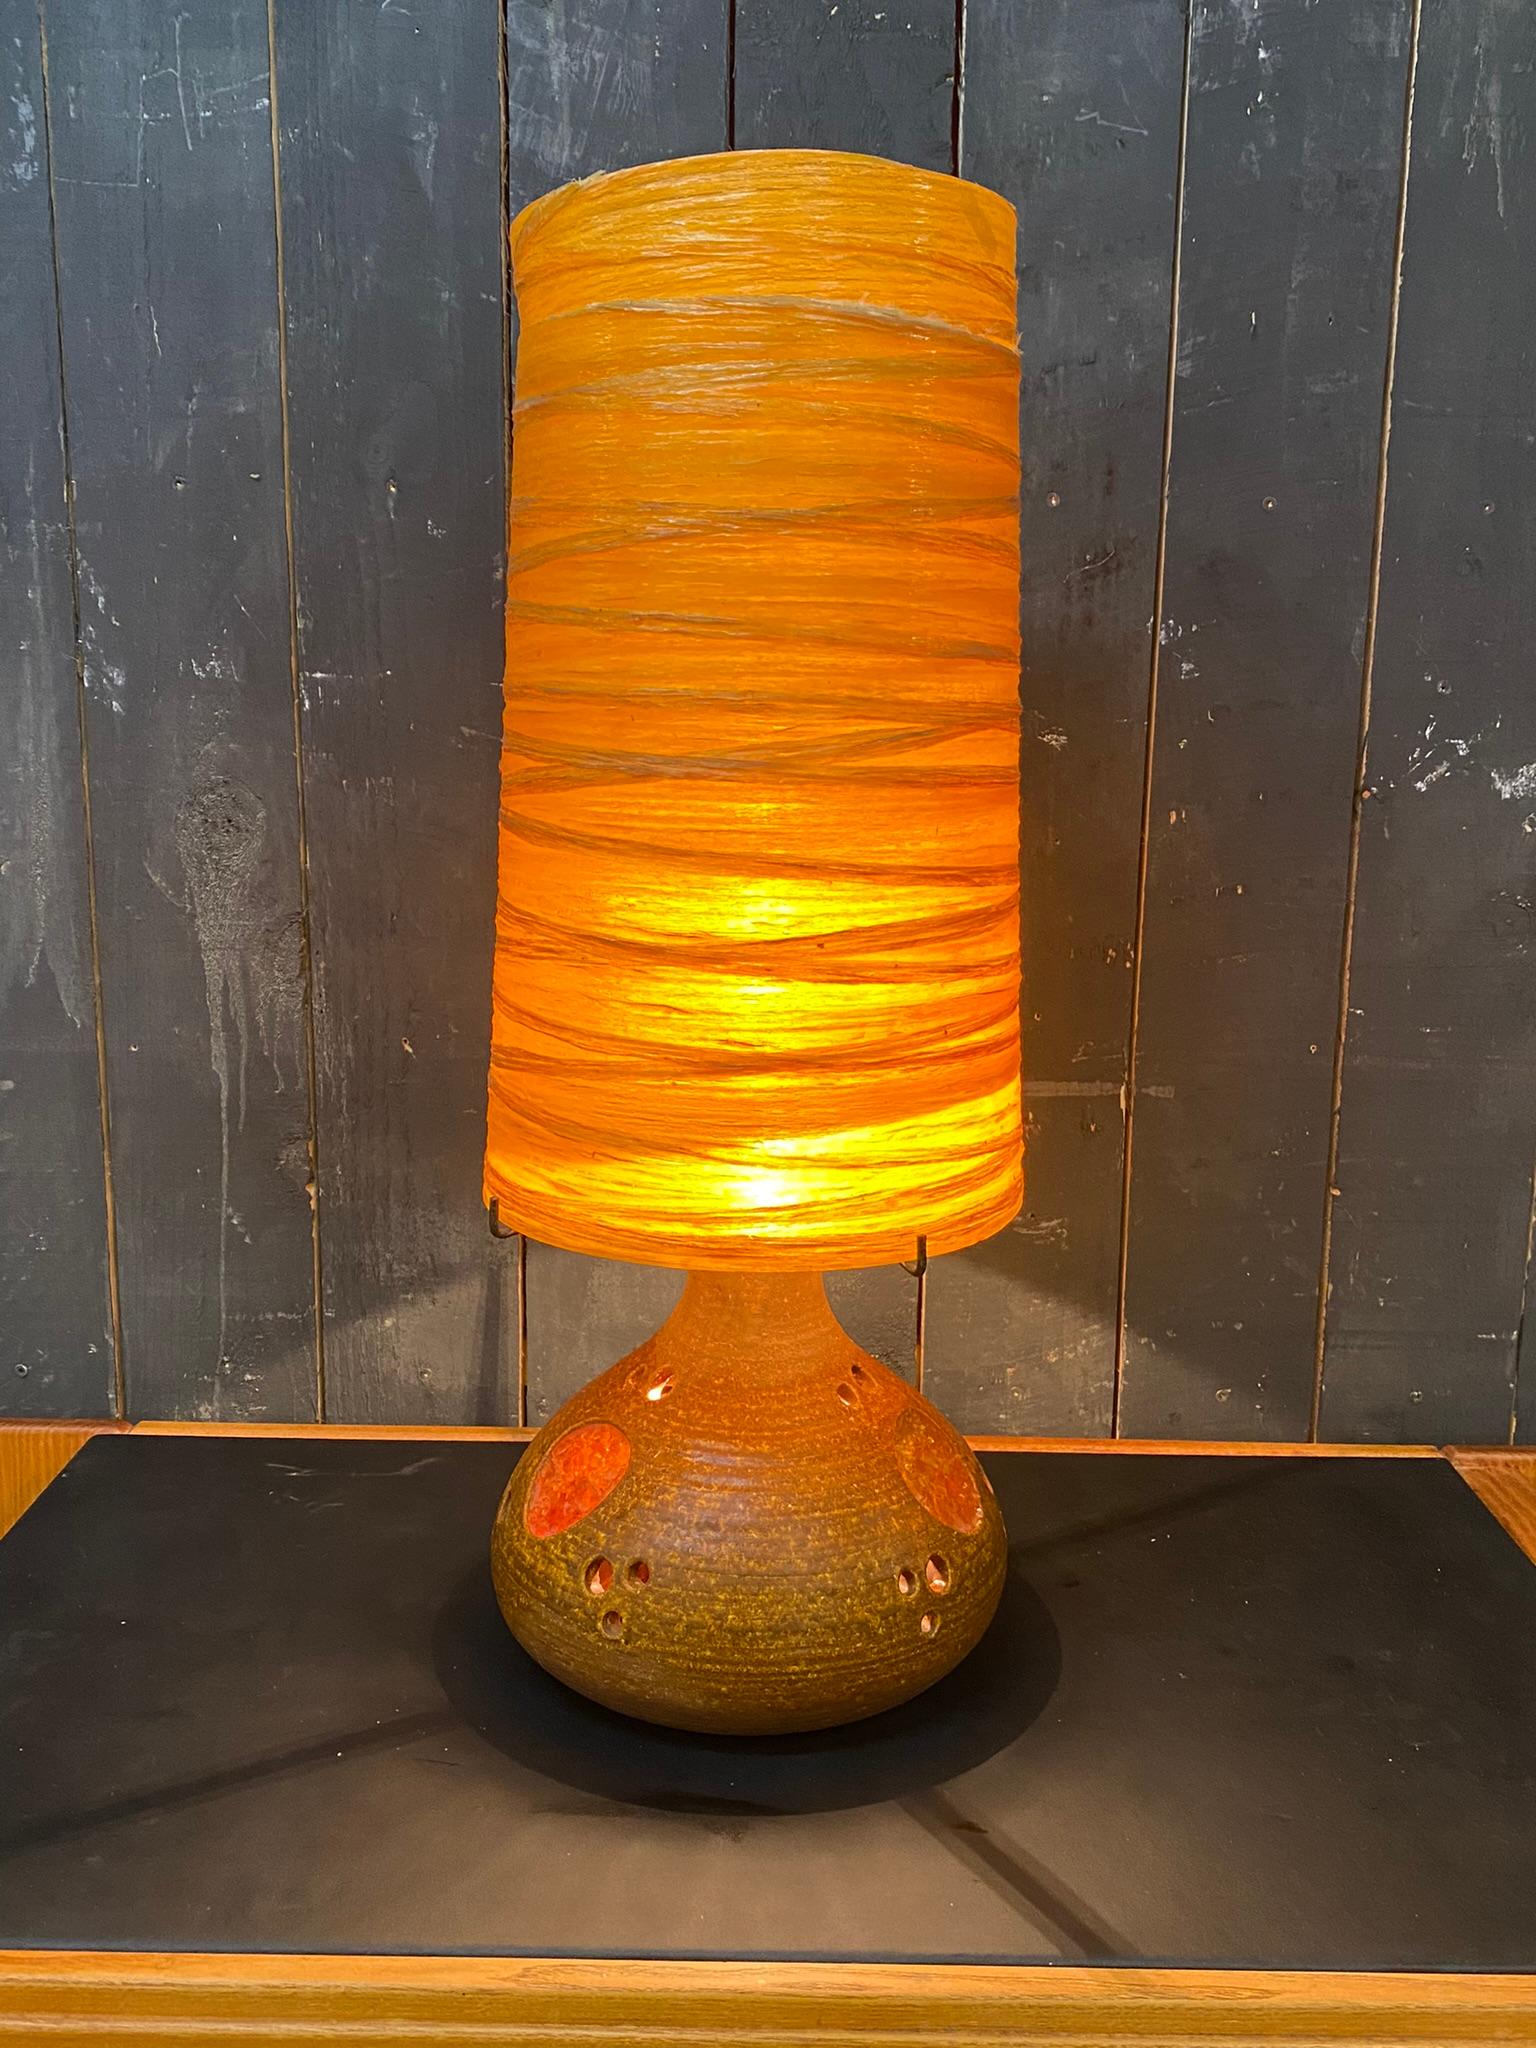 Lampe en terre cuite et son abat-jour original en résine colorée.
également avec un éclairage intérieur diffusé par des morceaux de verre coloré
attribuée à Accolay.